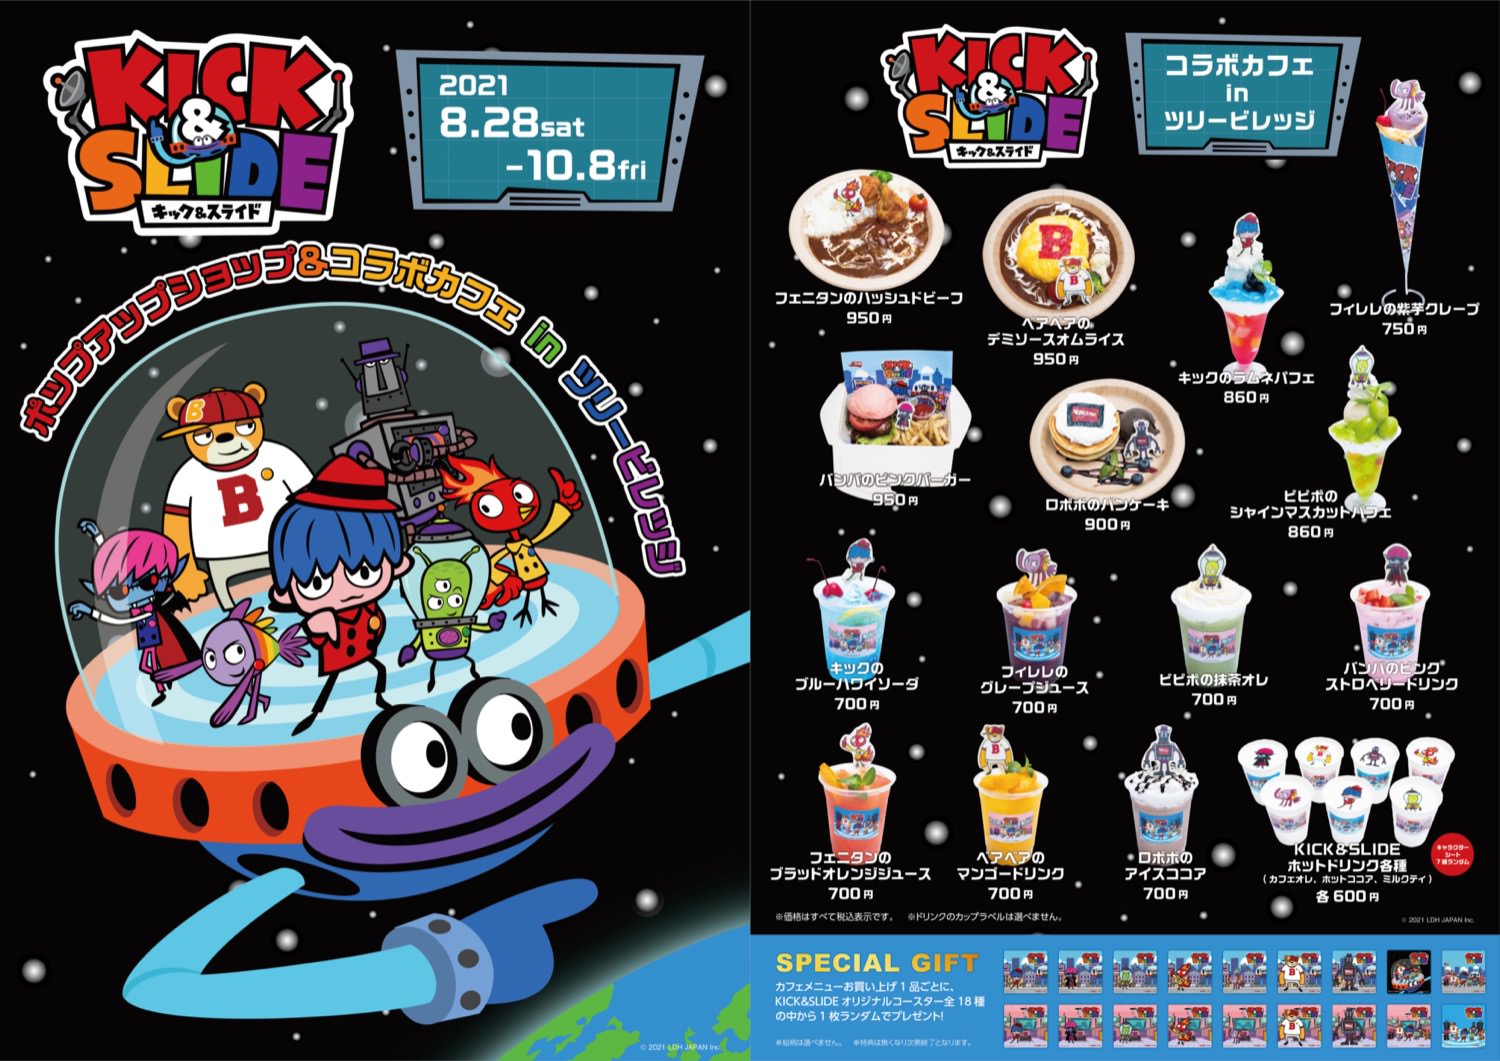 三代目jsbアニメ Kick Slide カフェ ショップ 8月28日より開催